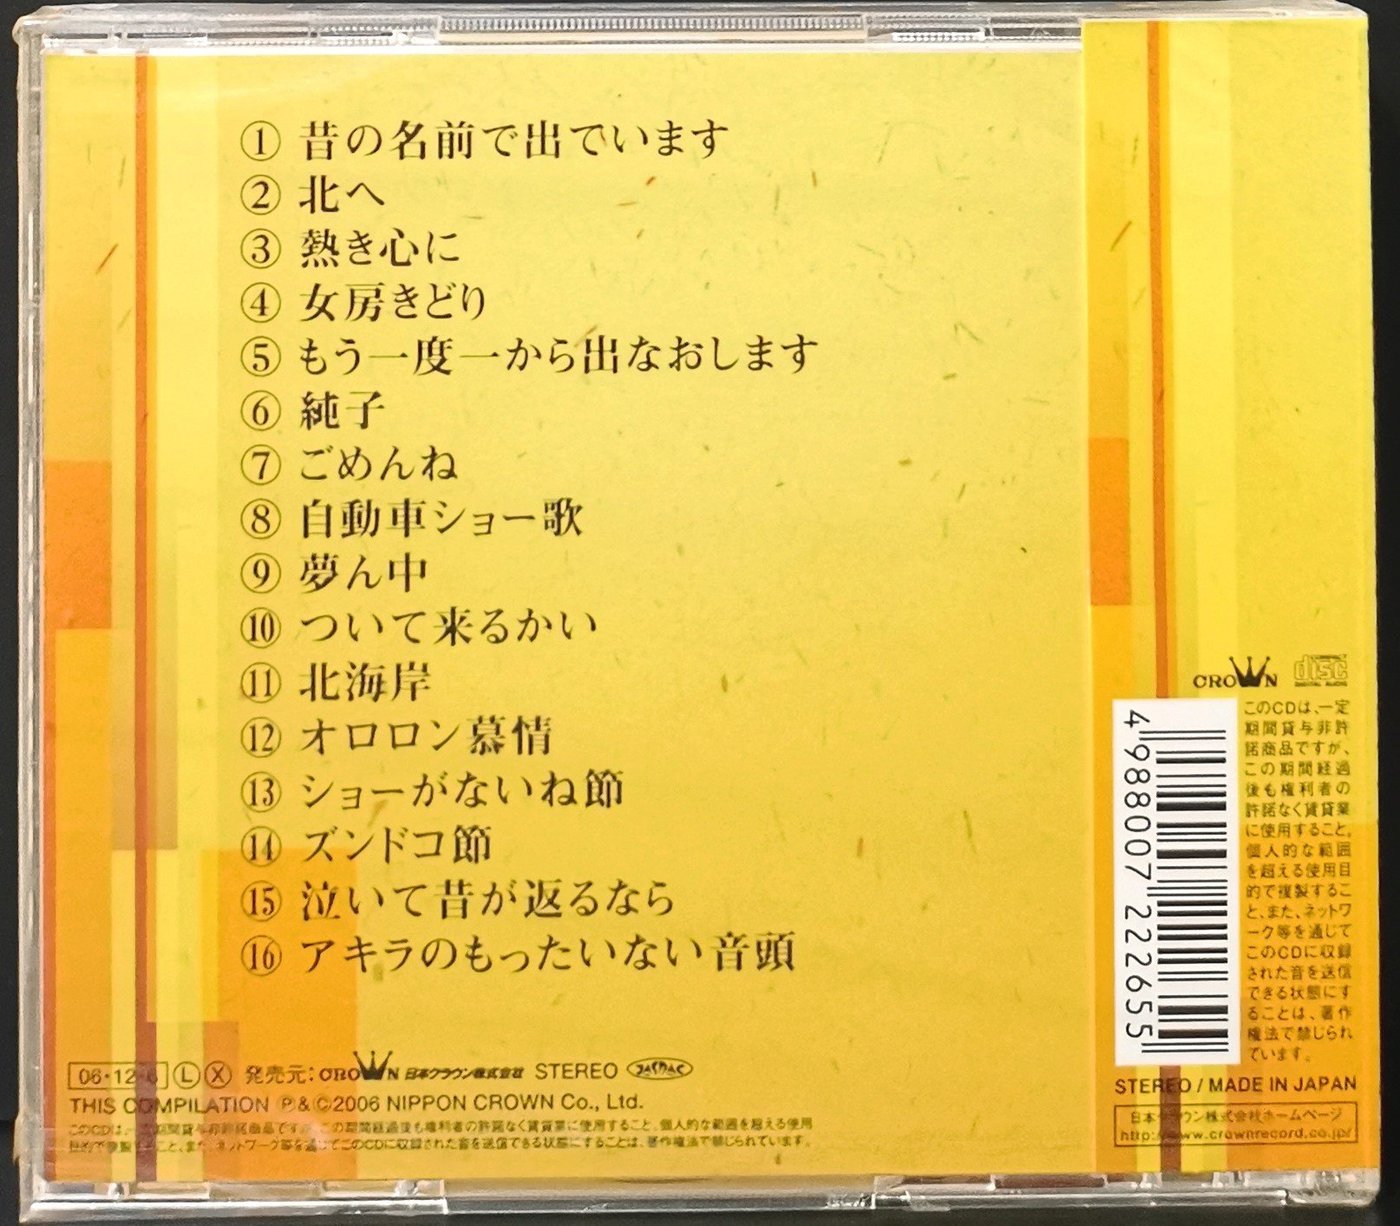 小林旭2006 全曲集收錄沈文程流浪之歌日本原曲昔の名前で出ています 